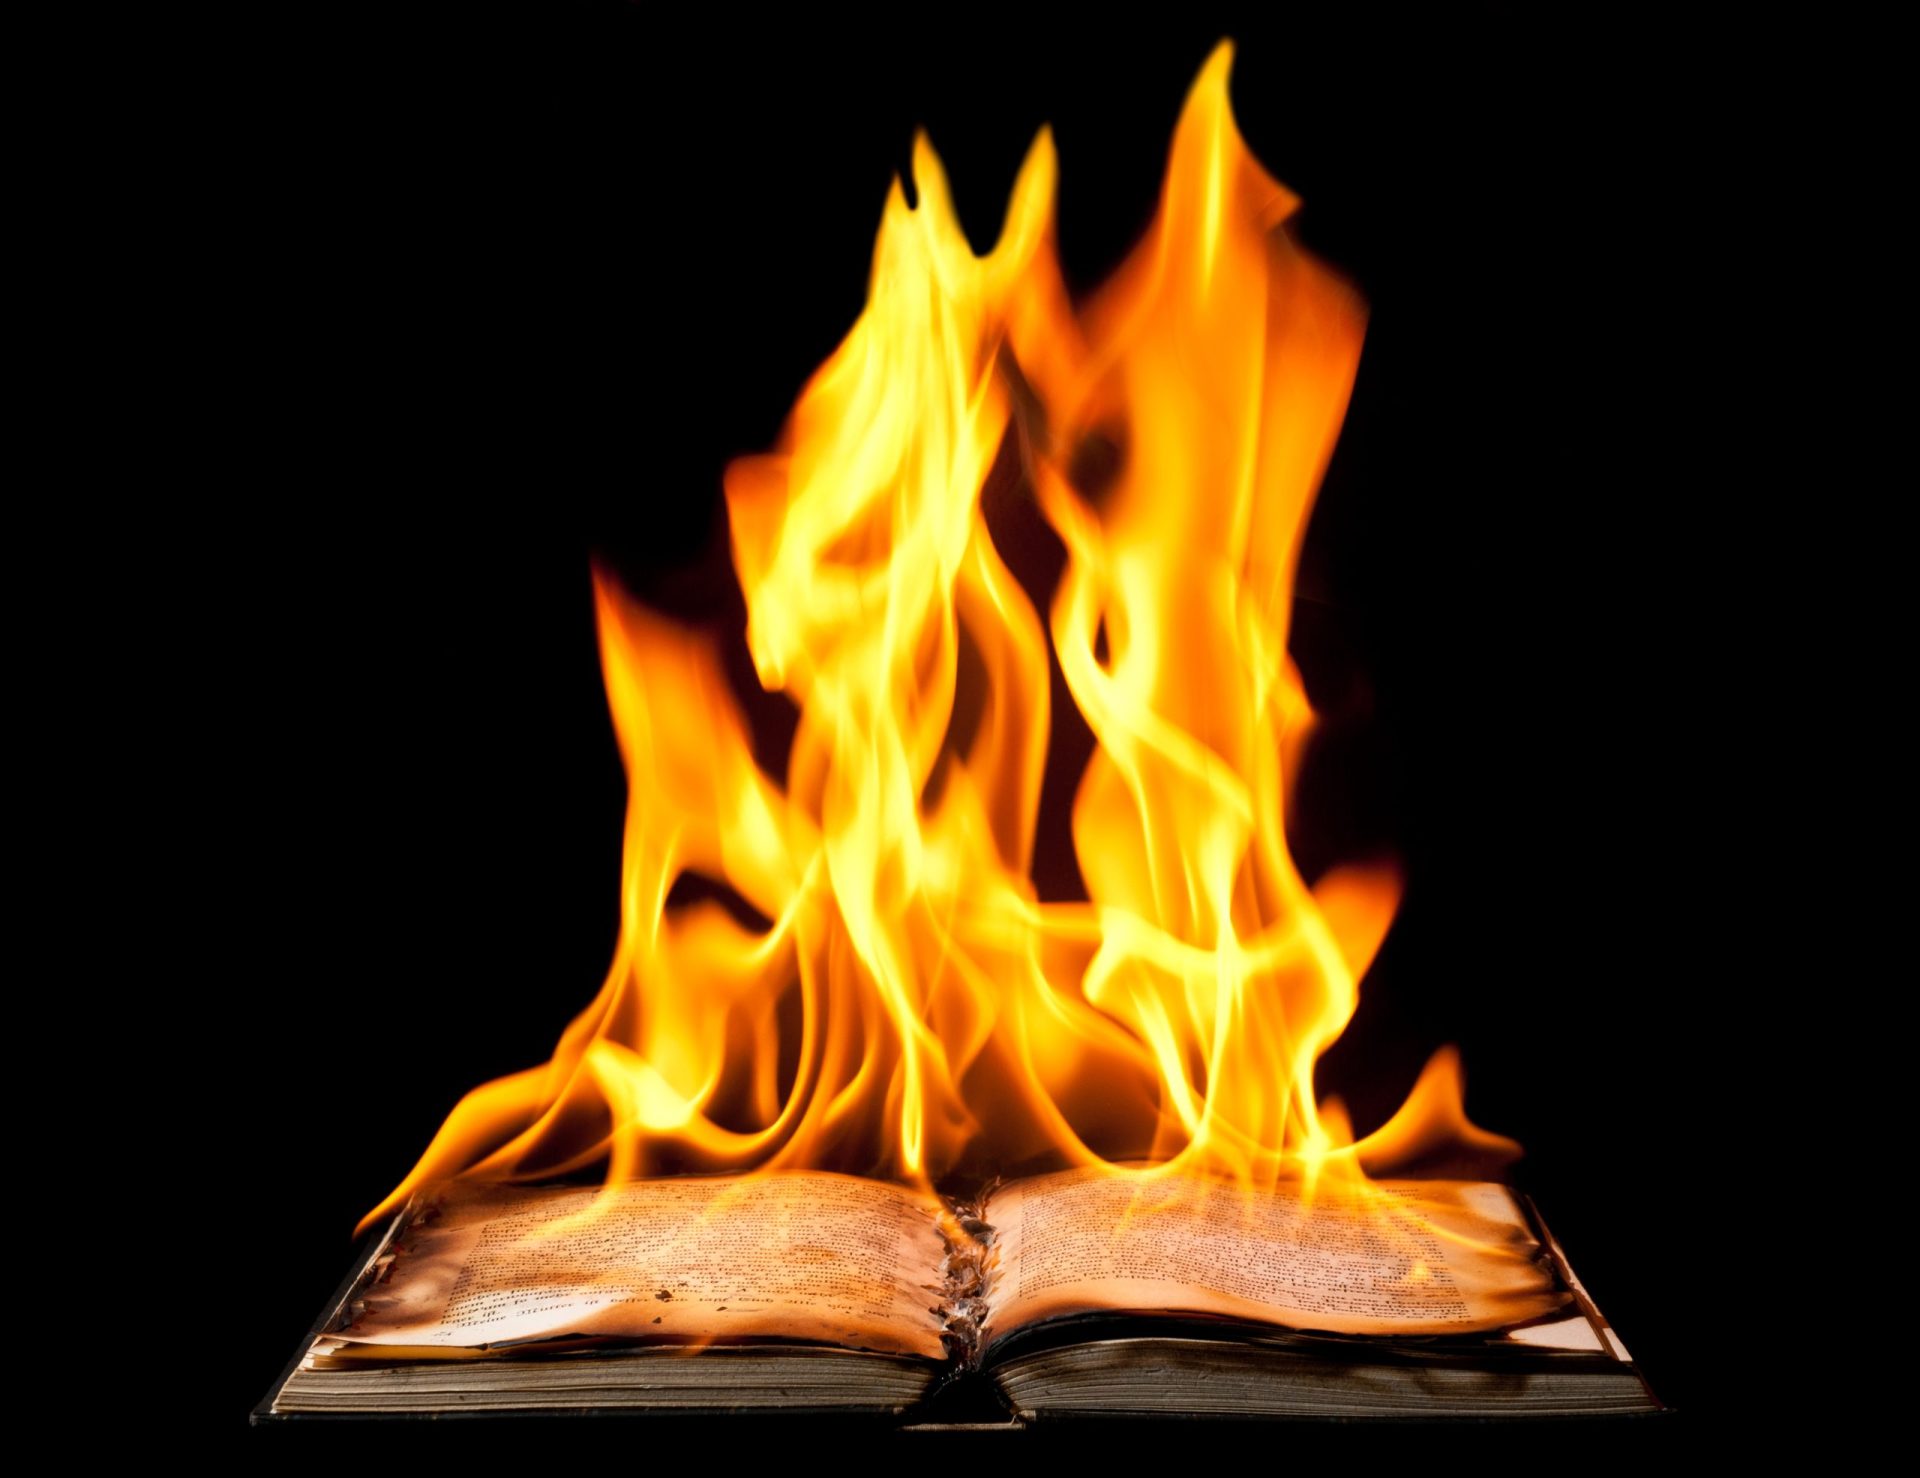 Livros queimados. Um desejo de reescrever a história?